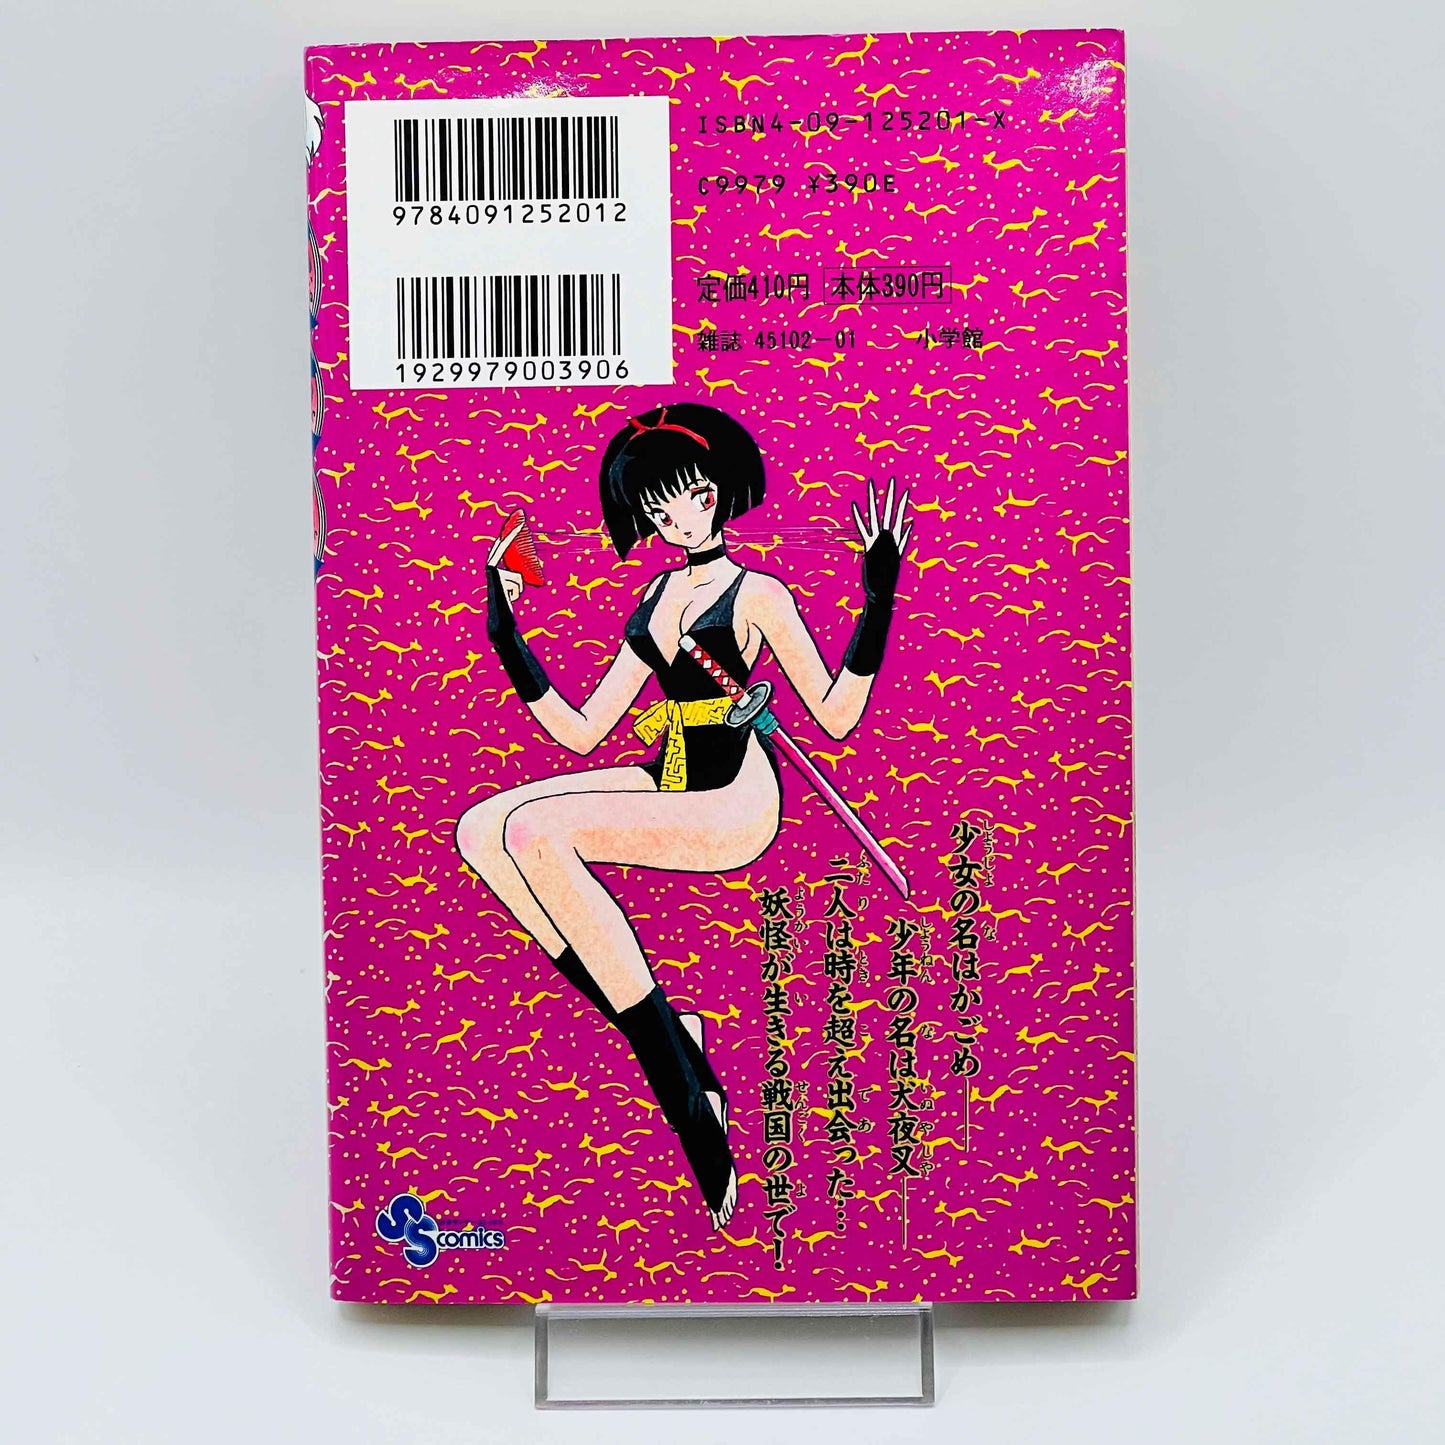 Inuyasha - Volume 01 - 1stPrint.net - 1st First Print Edition Manga Store - M-INU-01-002